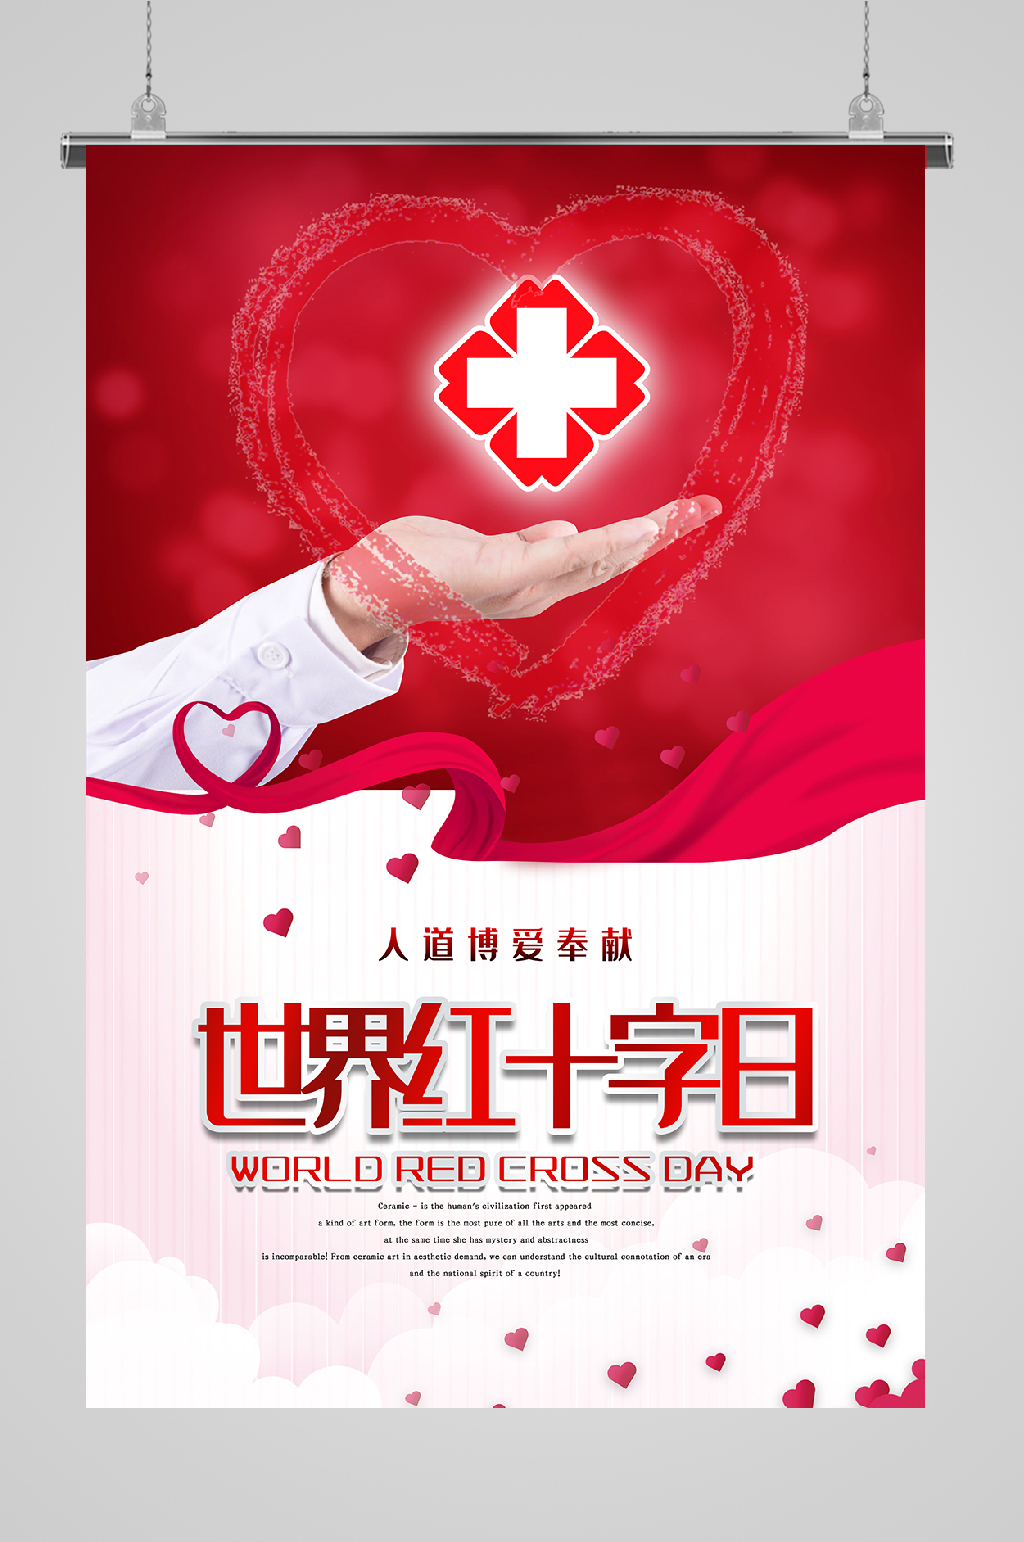 红十字精神宣传海报图片